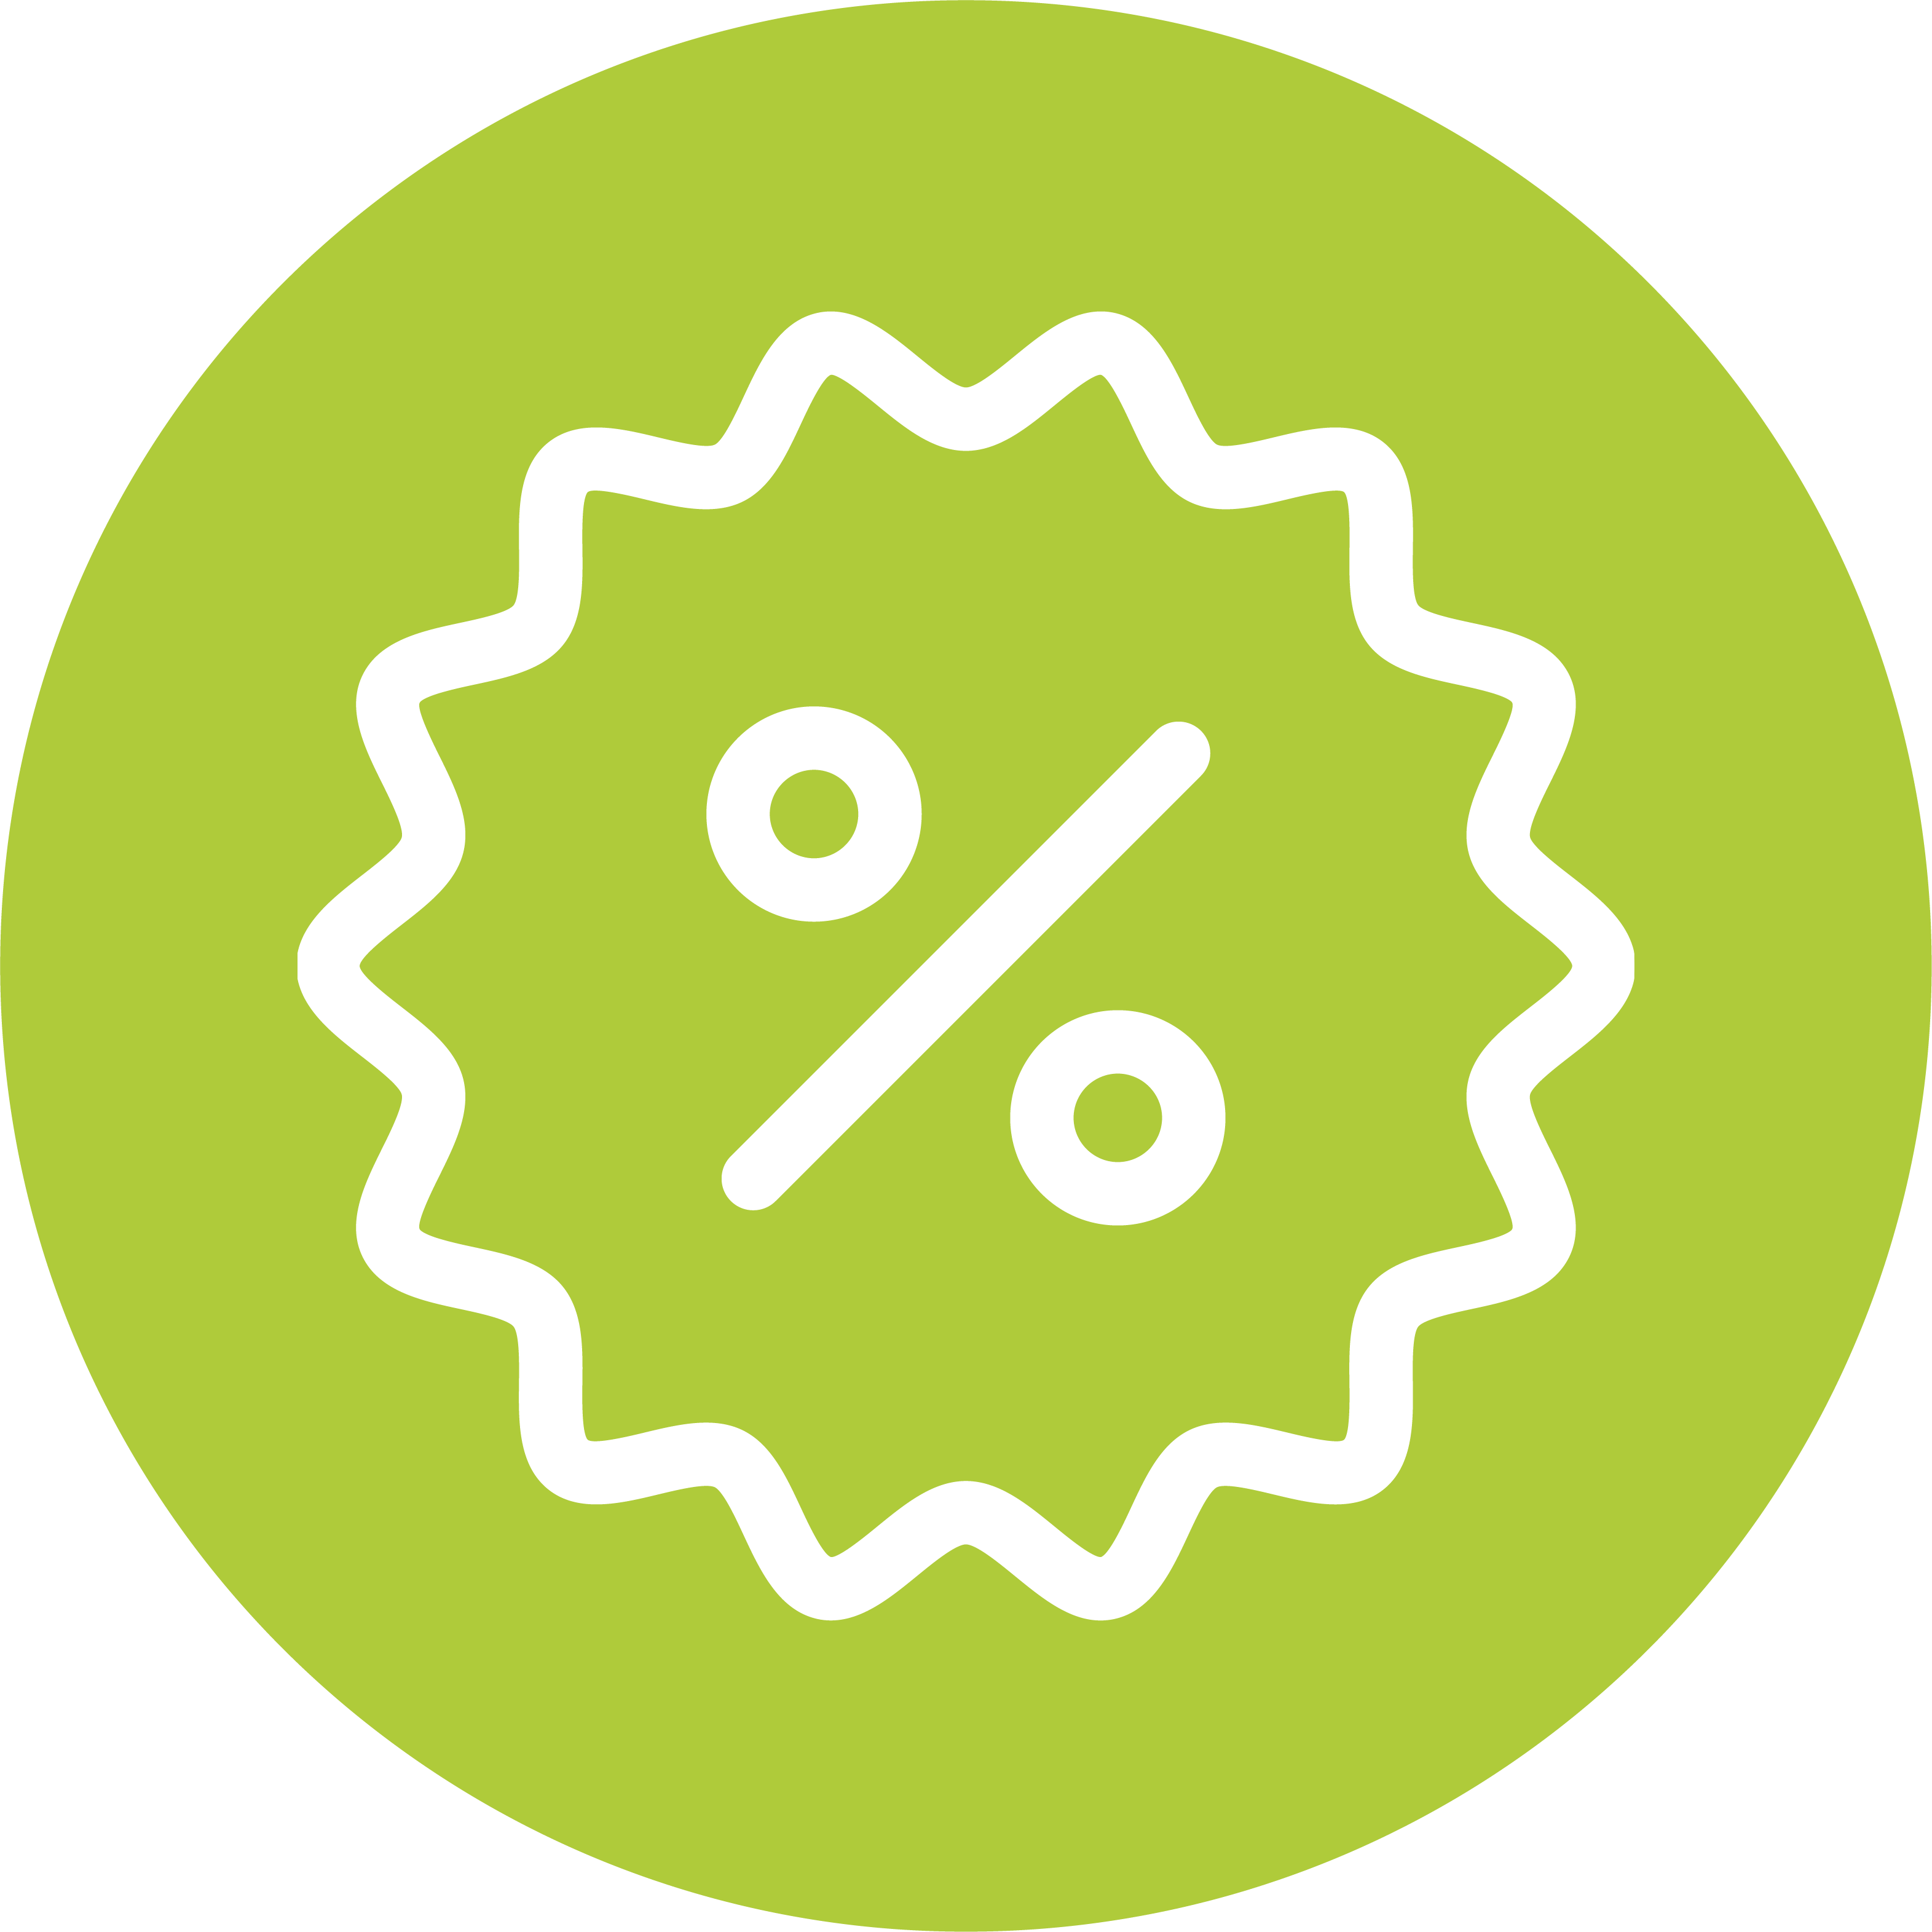 Grüner Kreis mit weißem Icon eines Preisschildes mit Prozentzeichen auf grünem kreisförmigem Hintergrund steht für Mitarbeiter-Rabatte und Sonderaktionen.